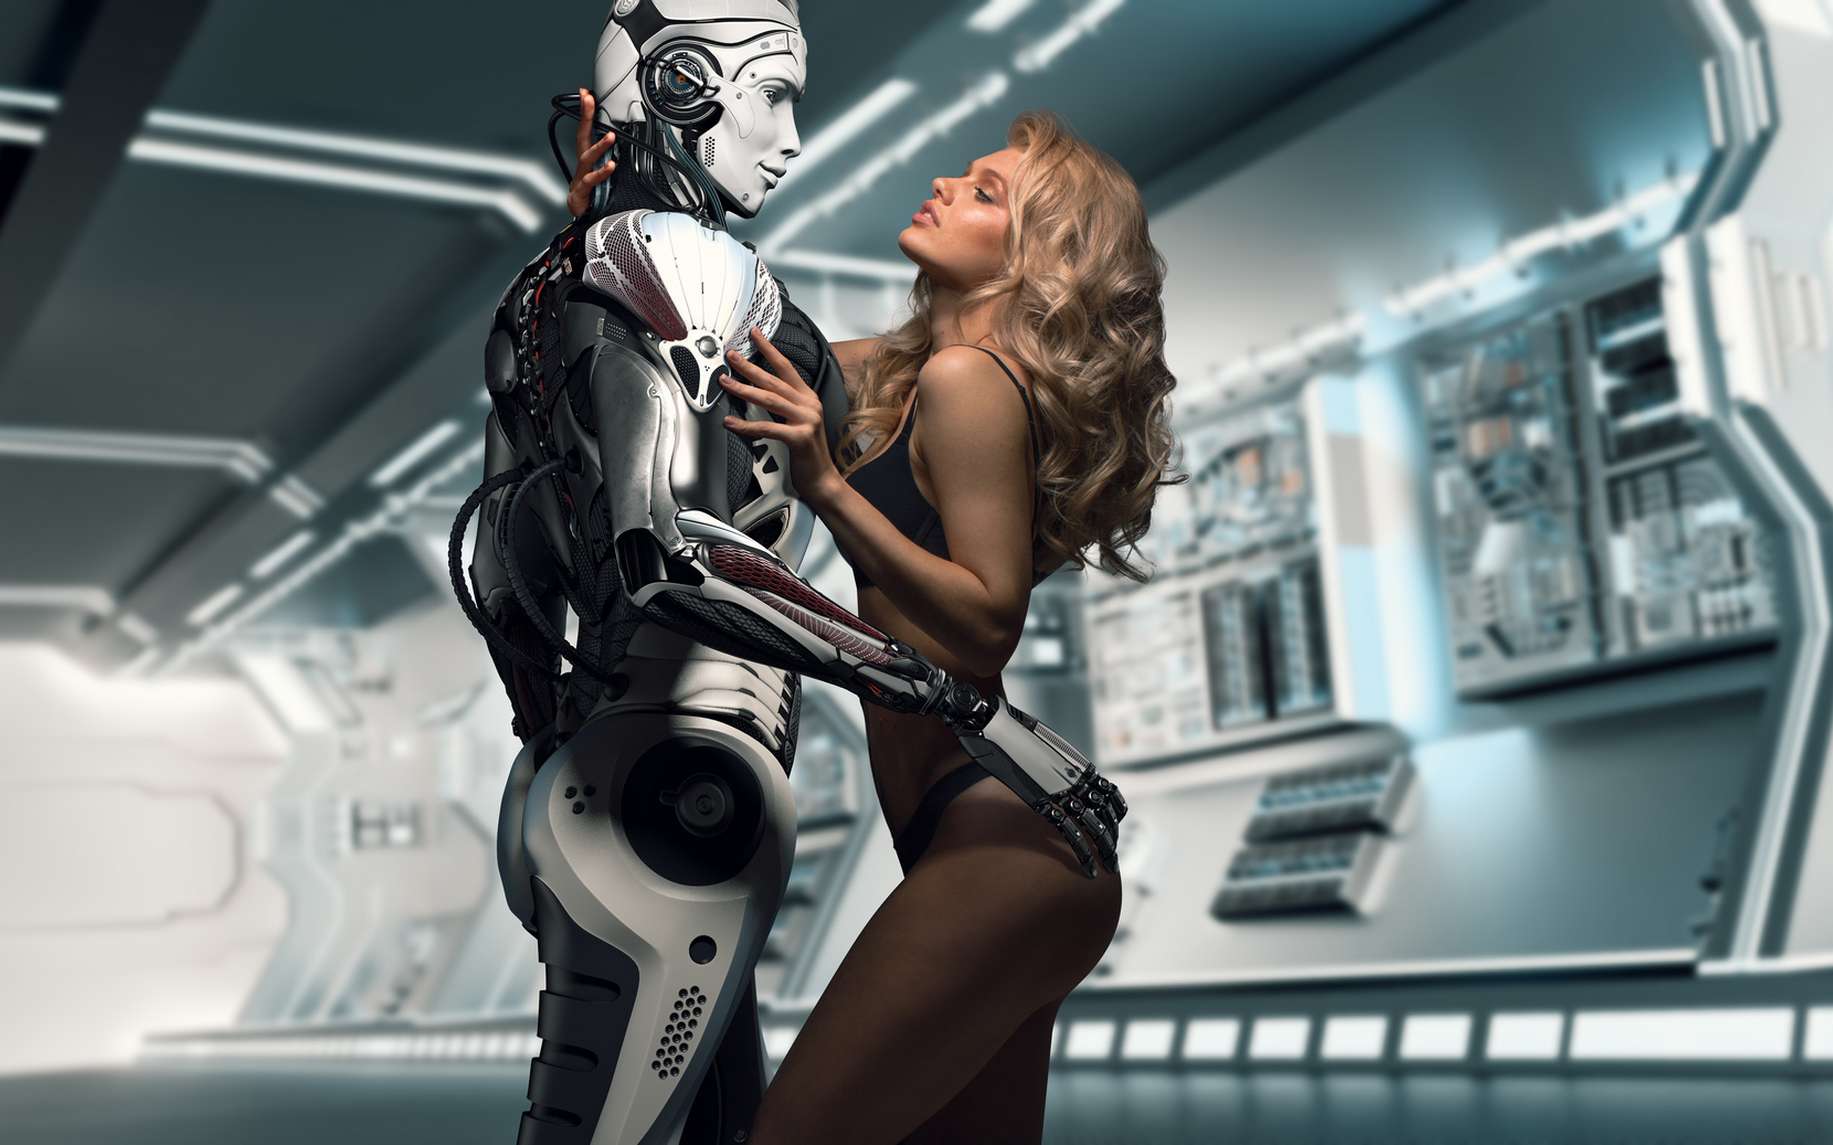 Prêt pour vous transformer en cyborg sexuel ? Willyam, Fotolia